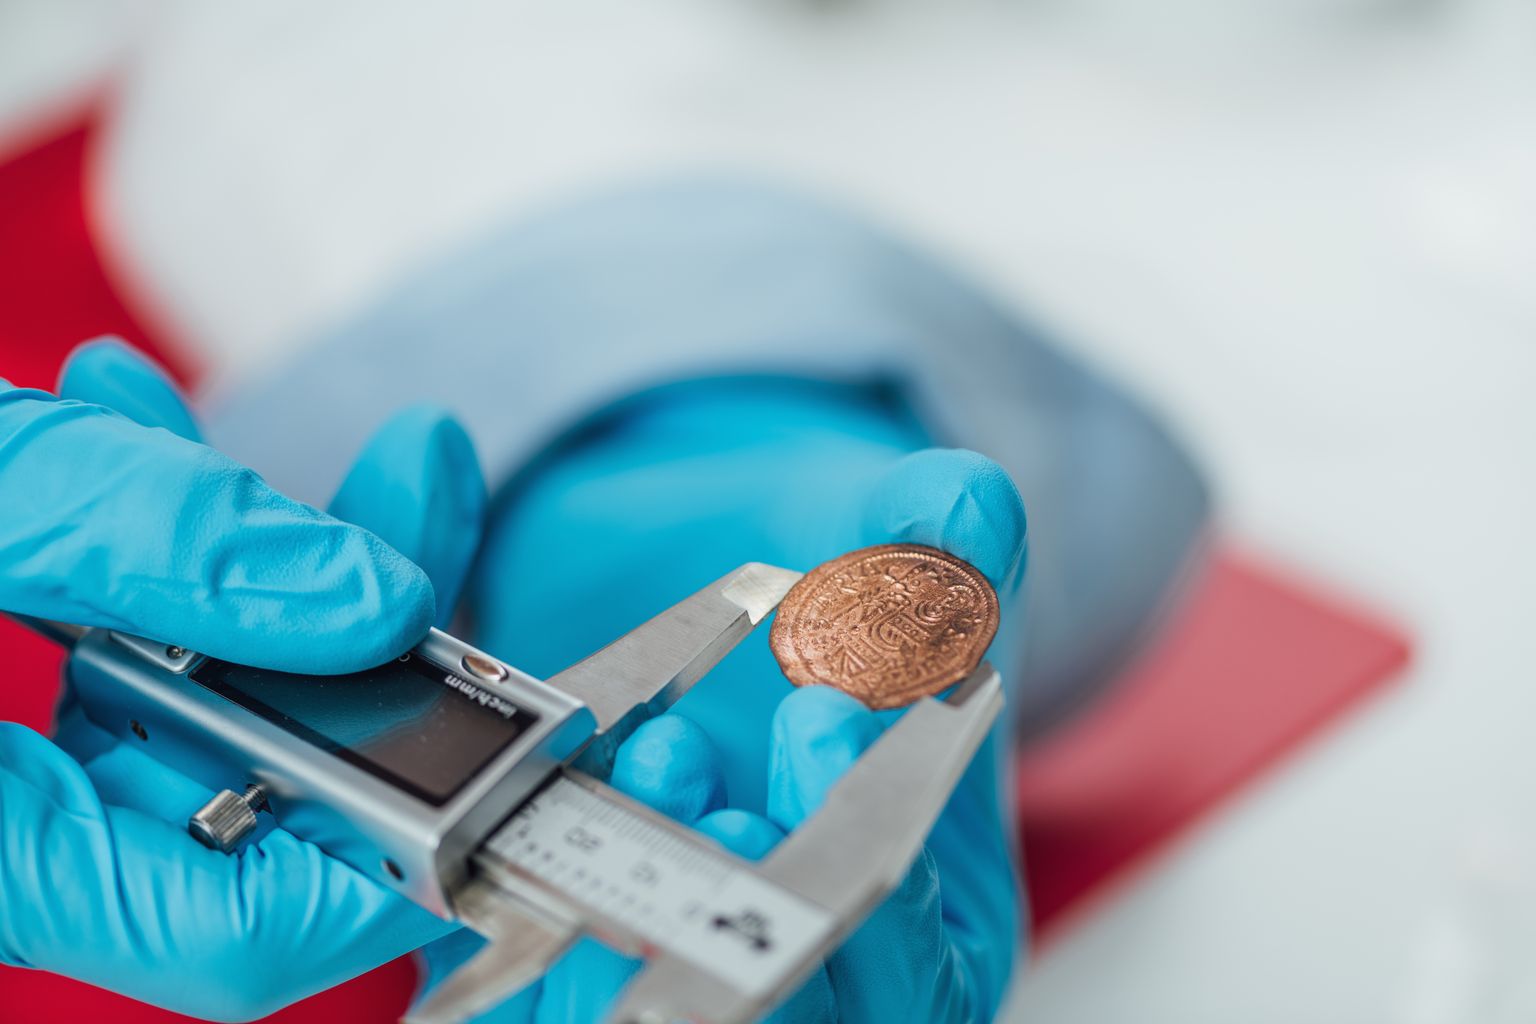 Teadlane uurimas vana münti. Pilt on illustreeriv